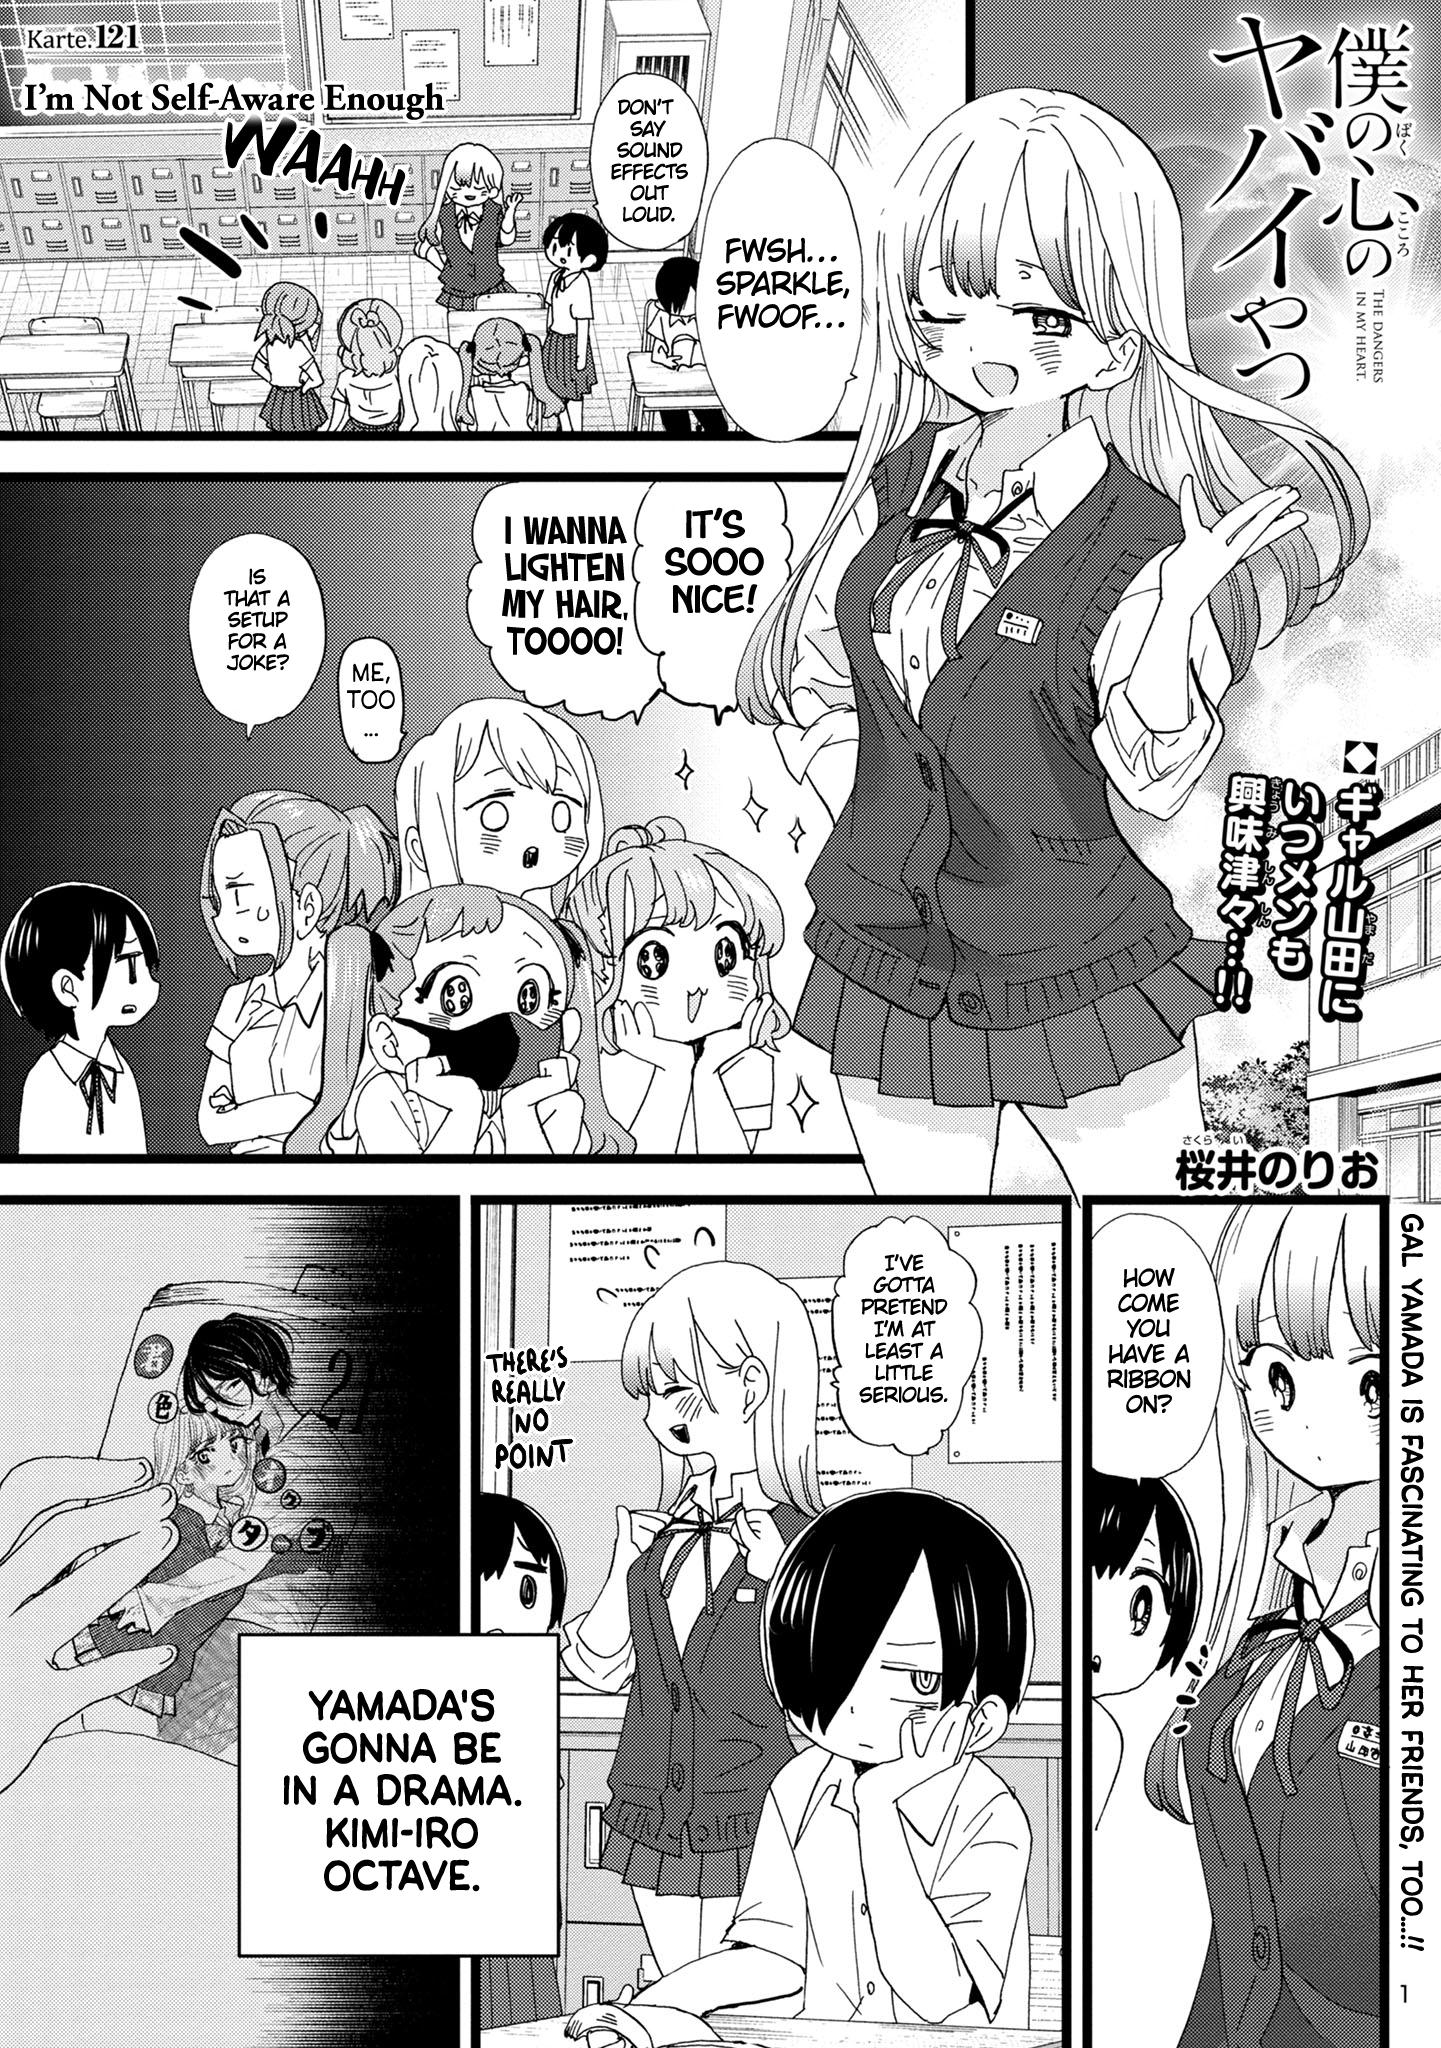 Boku no Kokoro no Yabai Yatsu Vol.9 Ch.114 Page 12 - Mangago